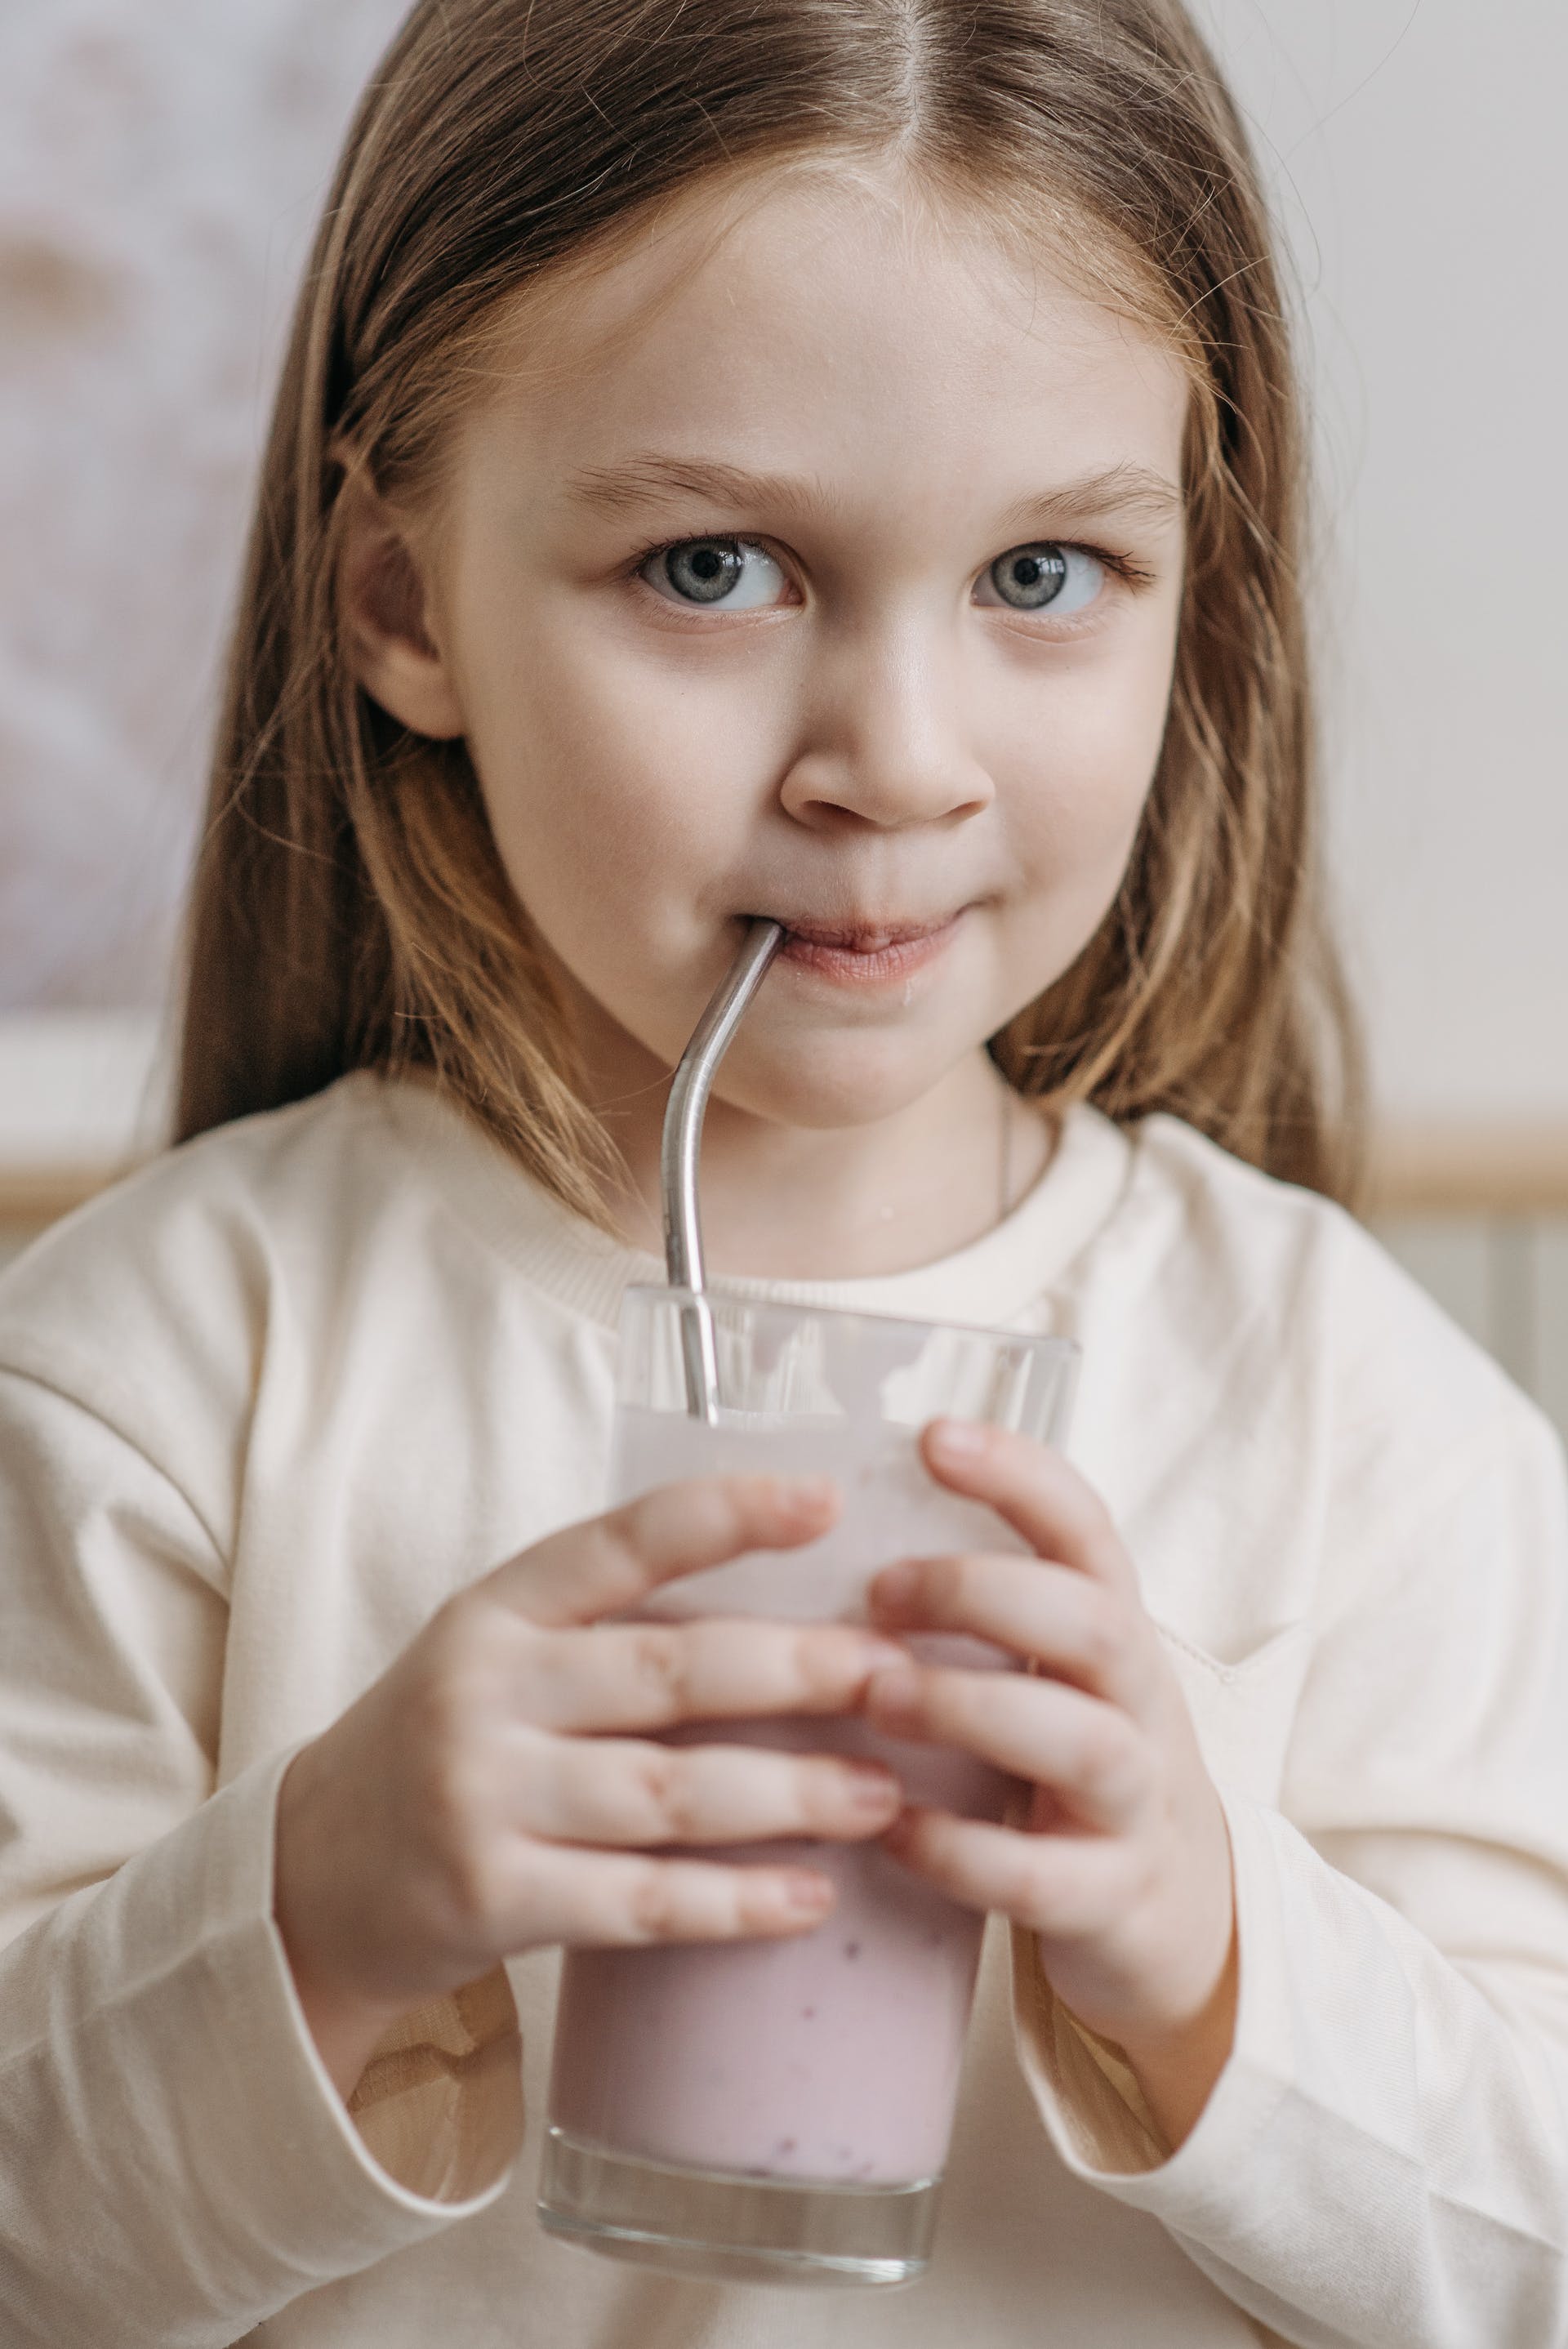 A girl drinking milkshake | Source: Pexels